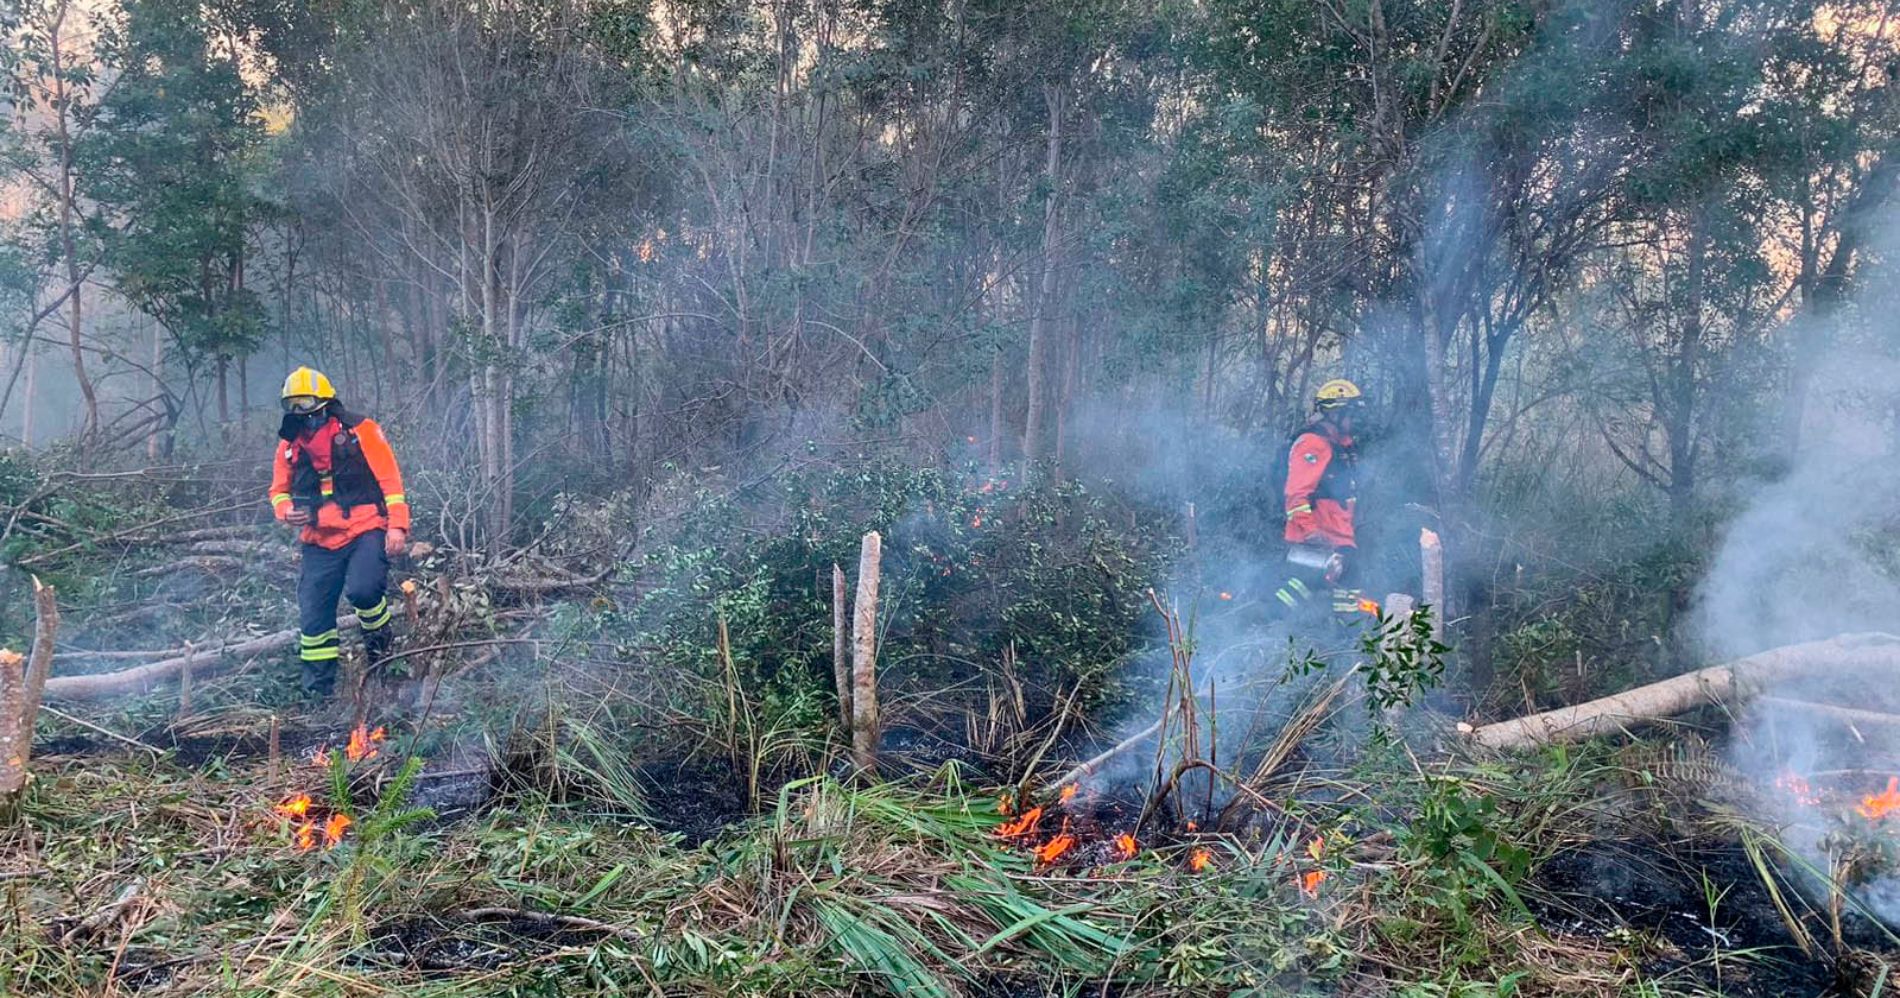 Corpo de Bombeiros do Paraná inicia operação de combate a incêndios florestais no estado, com o apoio do Simepar